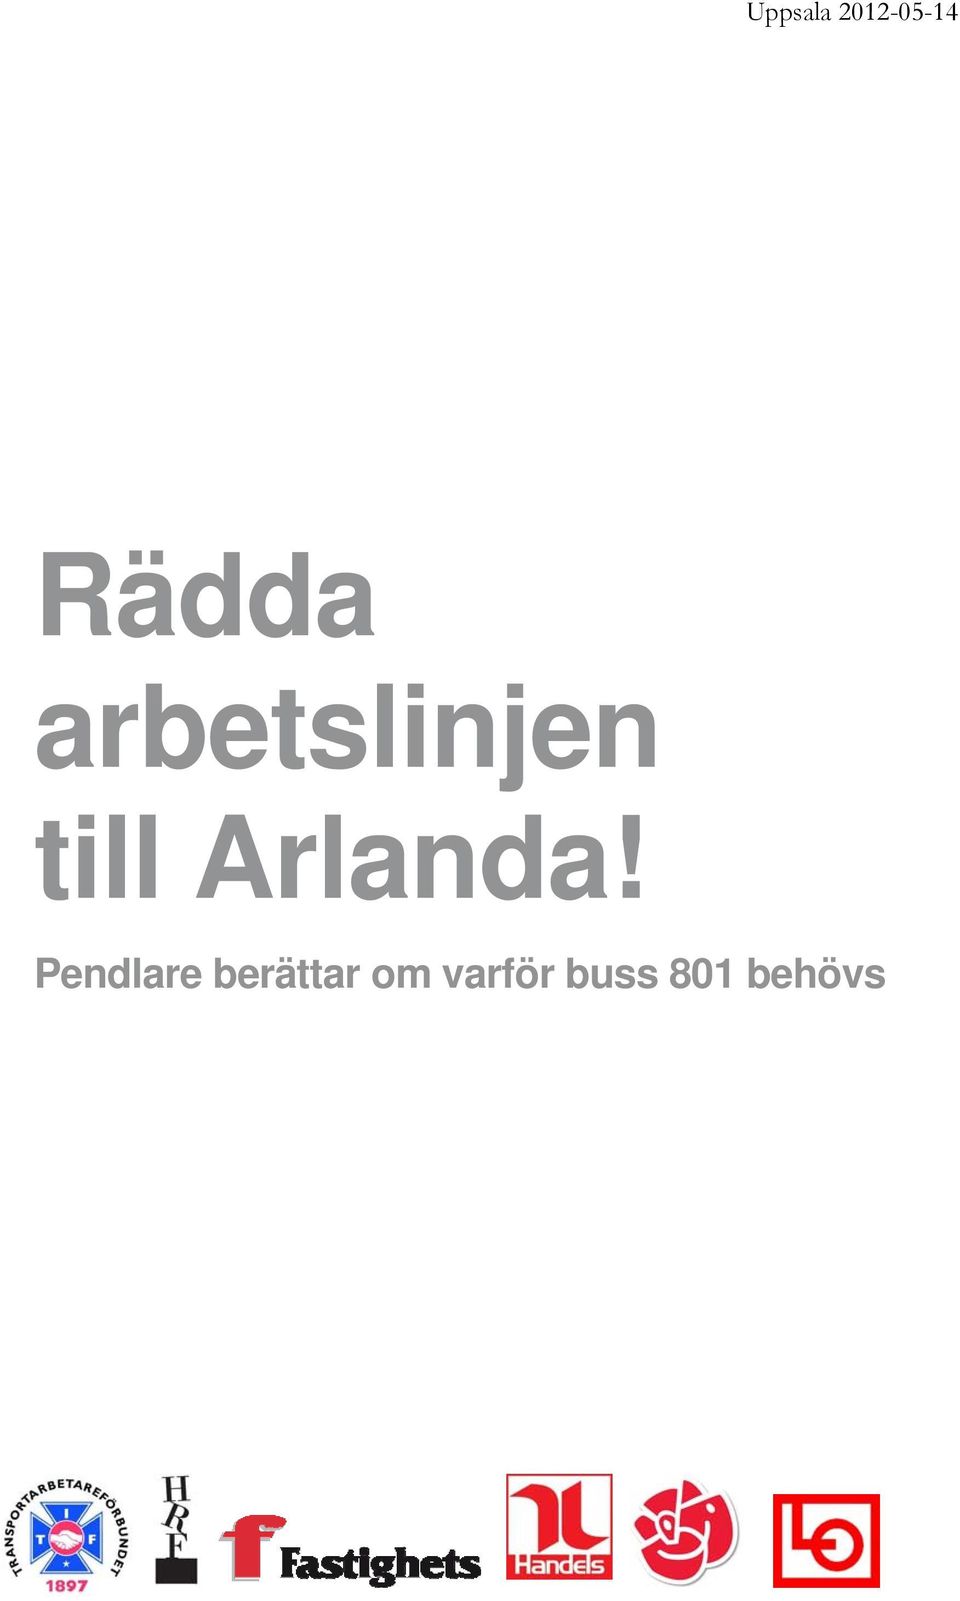 Arlanda!